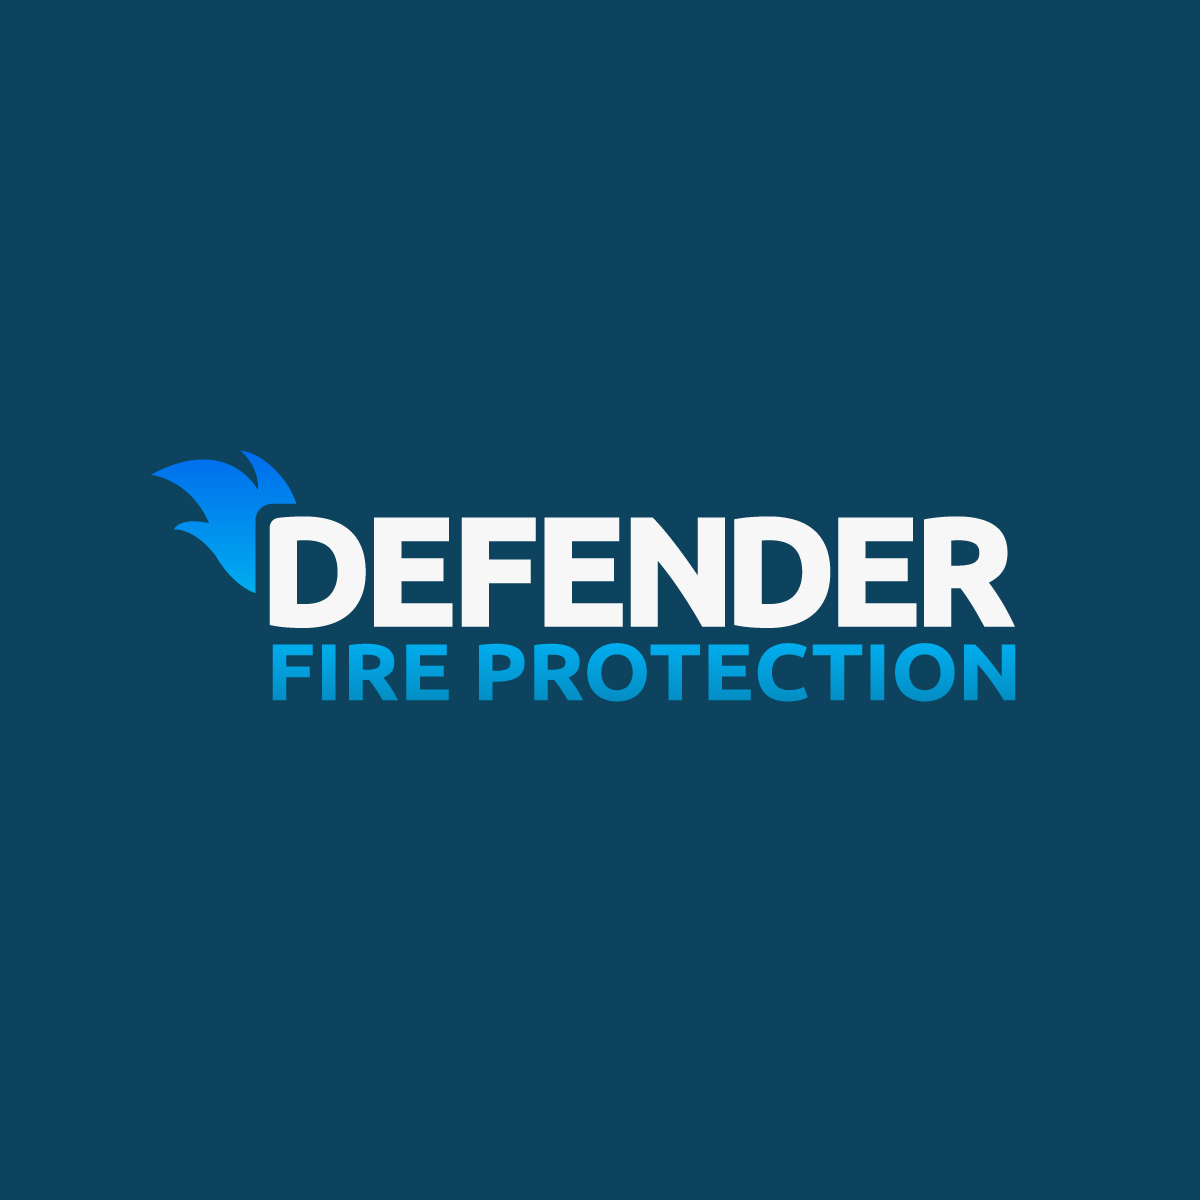 nohands-logo-design-defender-fire